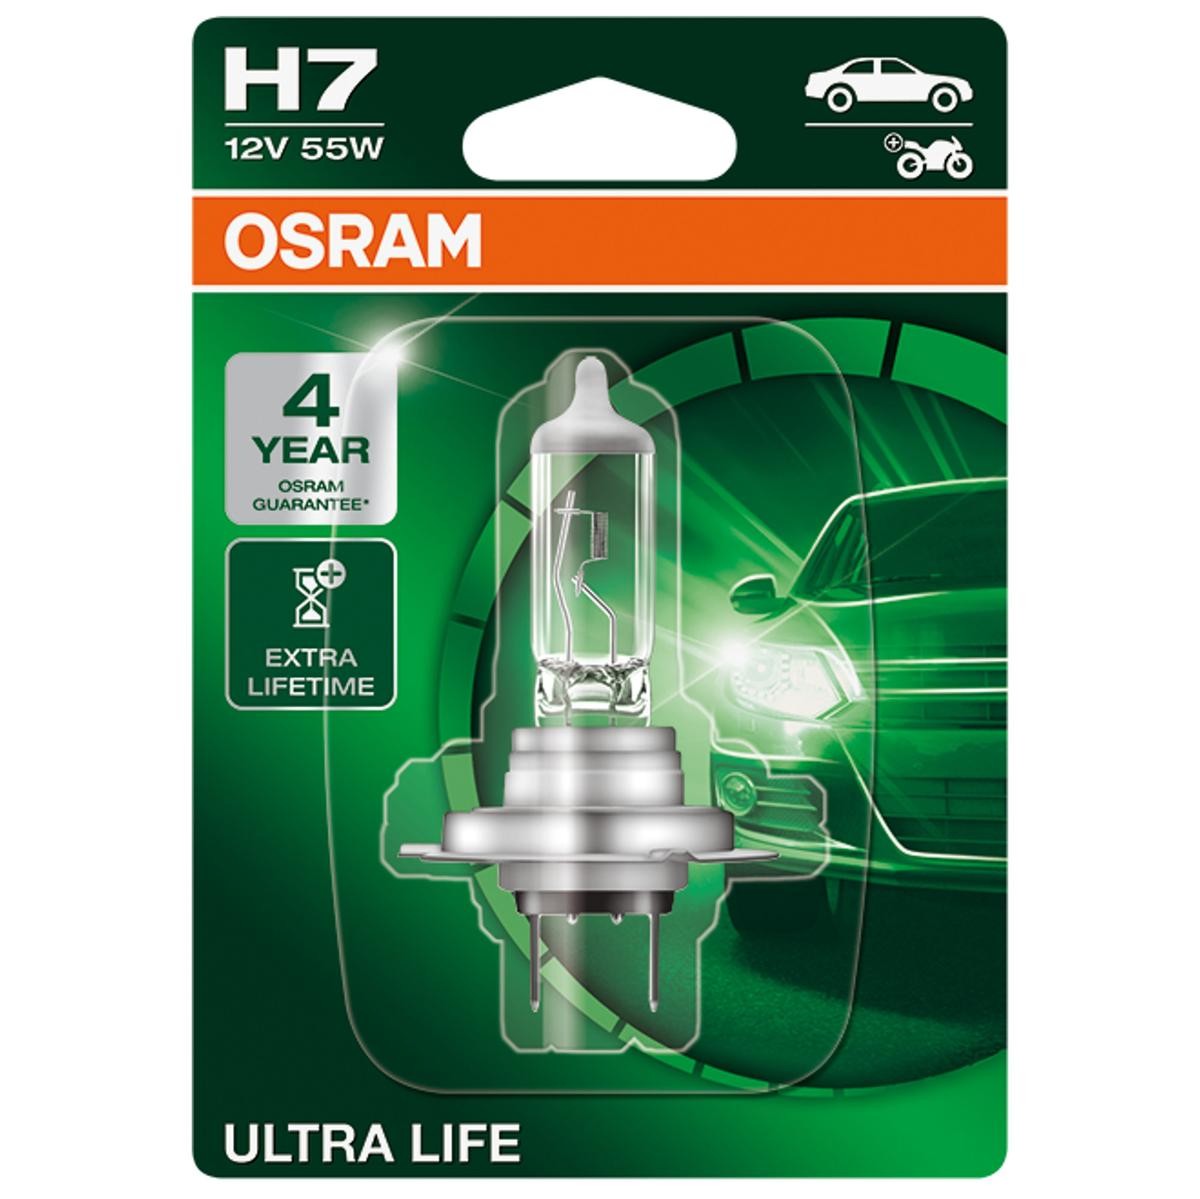 H7 OSRAM ULTRA LIFE H7 12V 55W PX26d, 3200K, Halogen Main beam bulb 64210ULT-01B buy